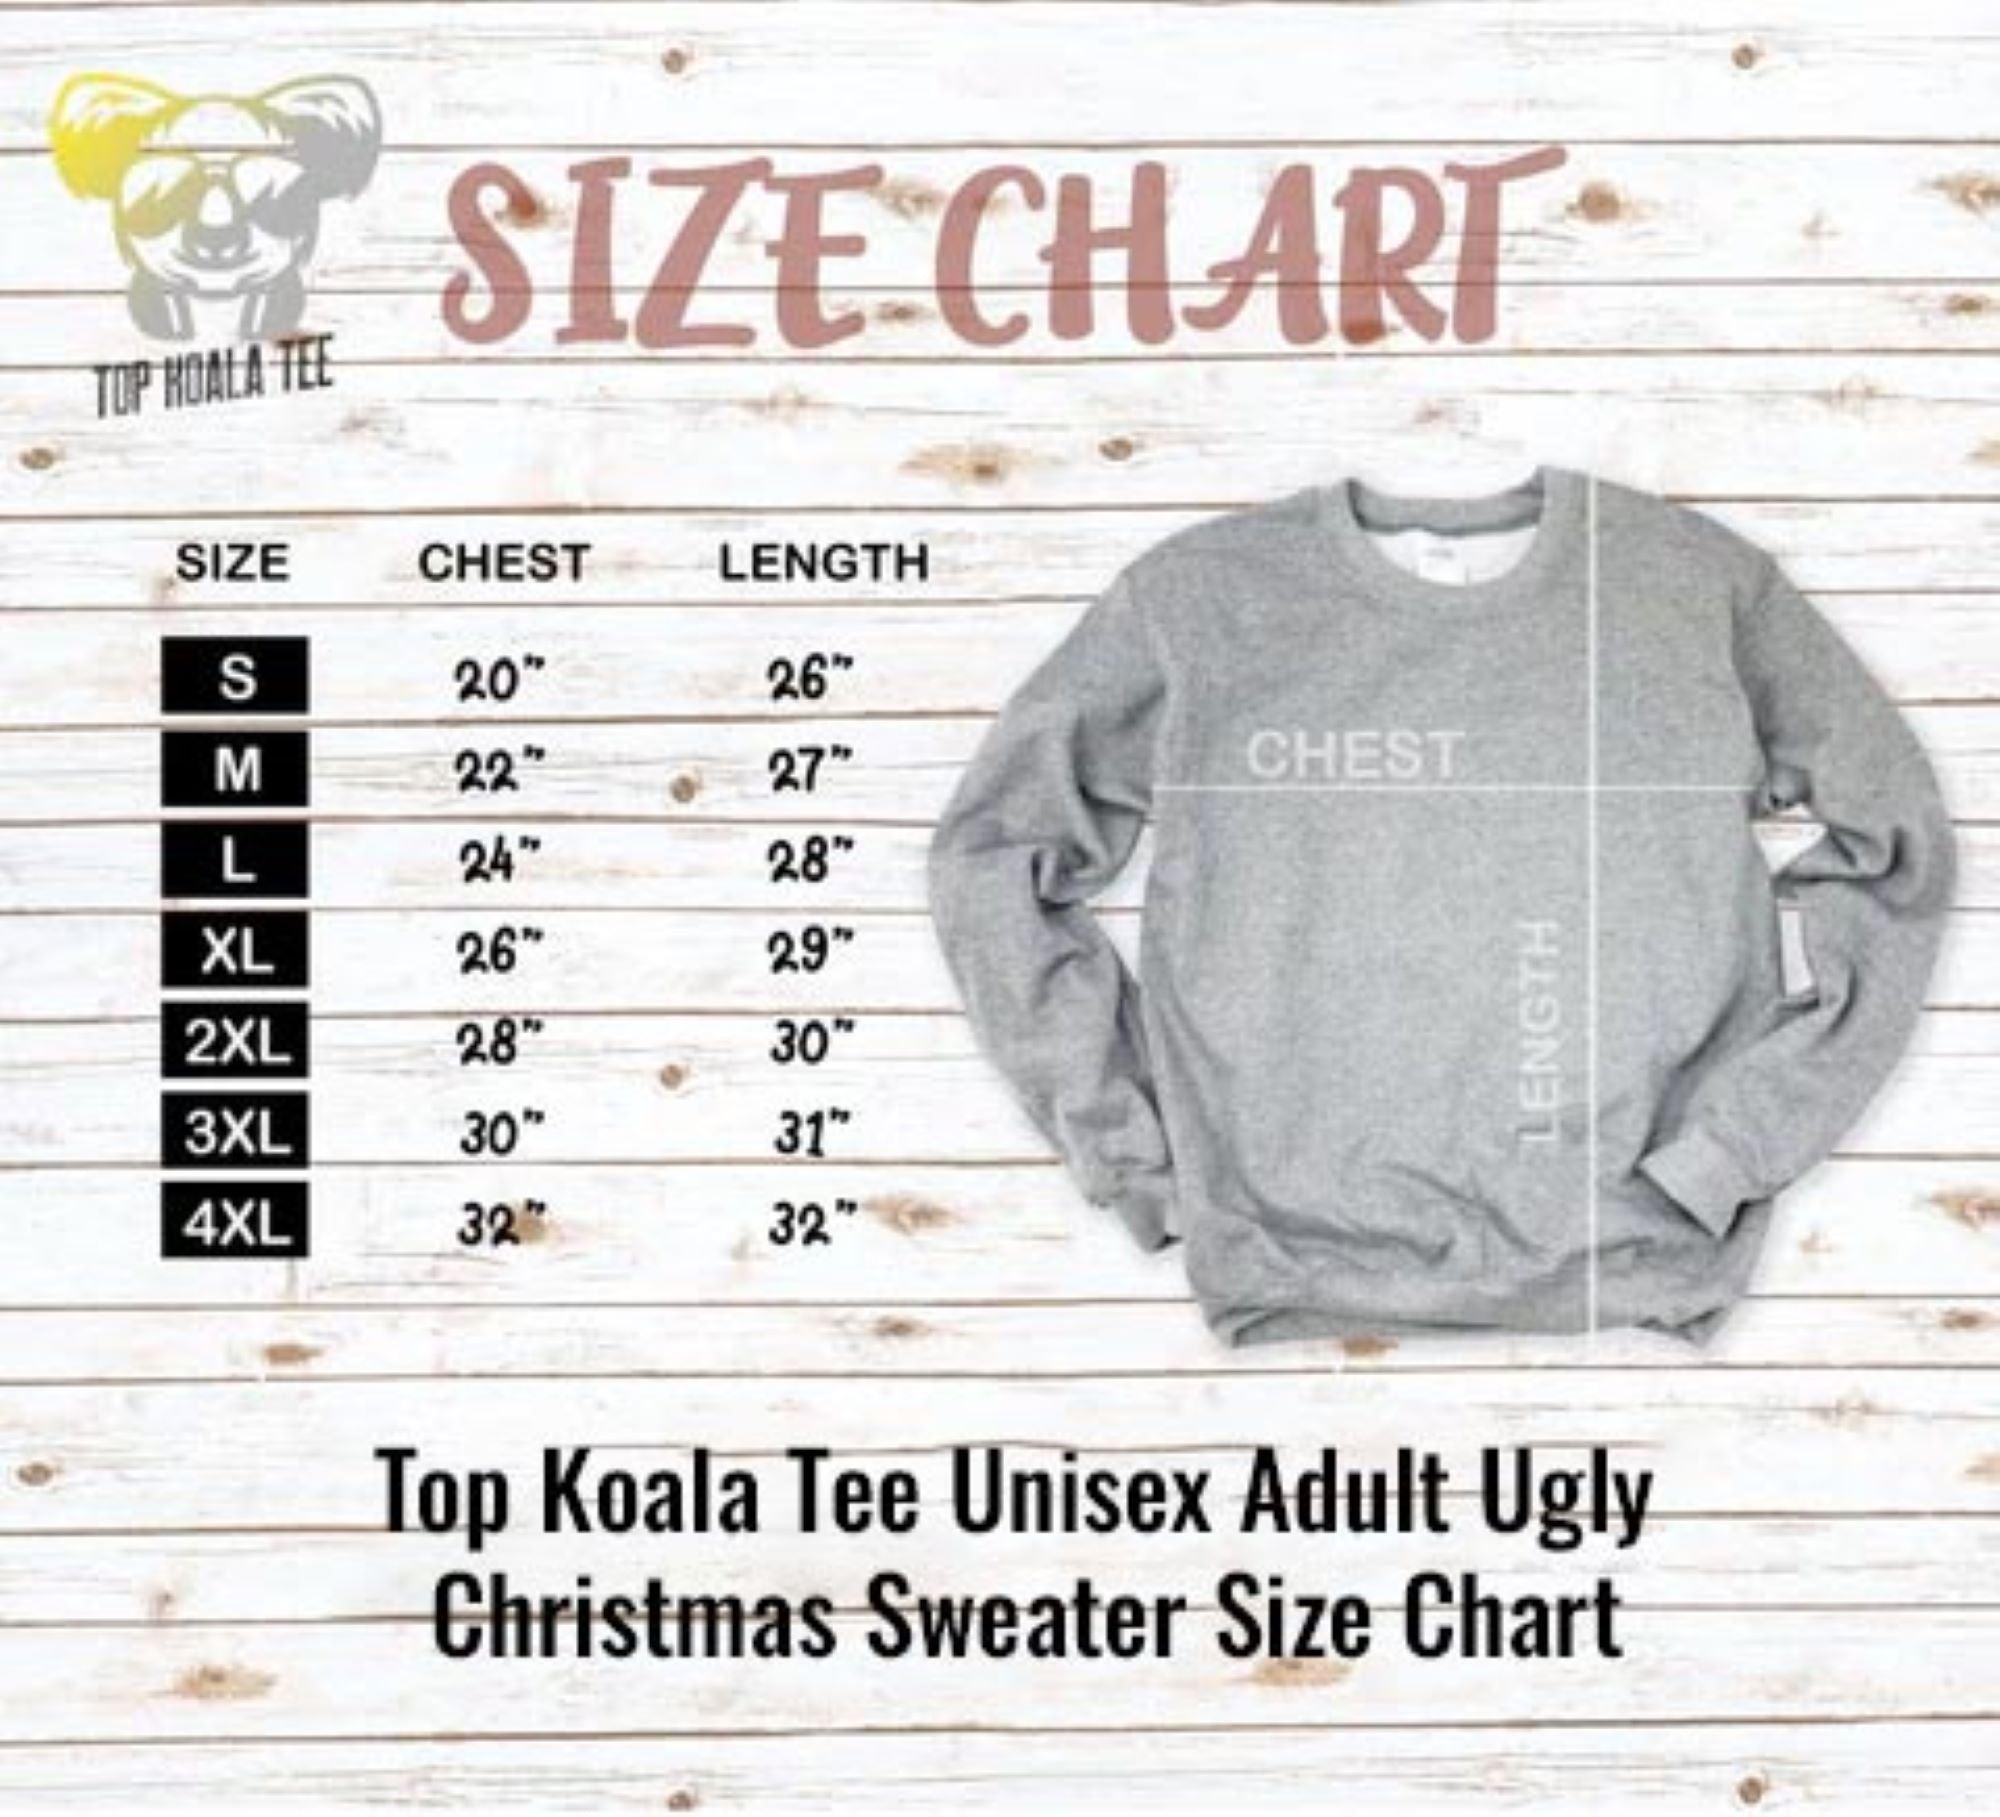 Christmas Cheer I thought you said Christmas Beer Unisex Ugly Christmas Sweatshirt - TopKoalaTee